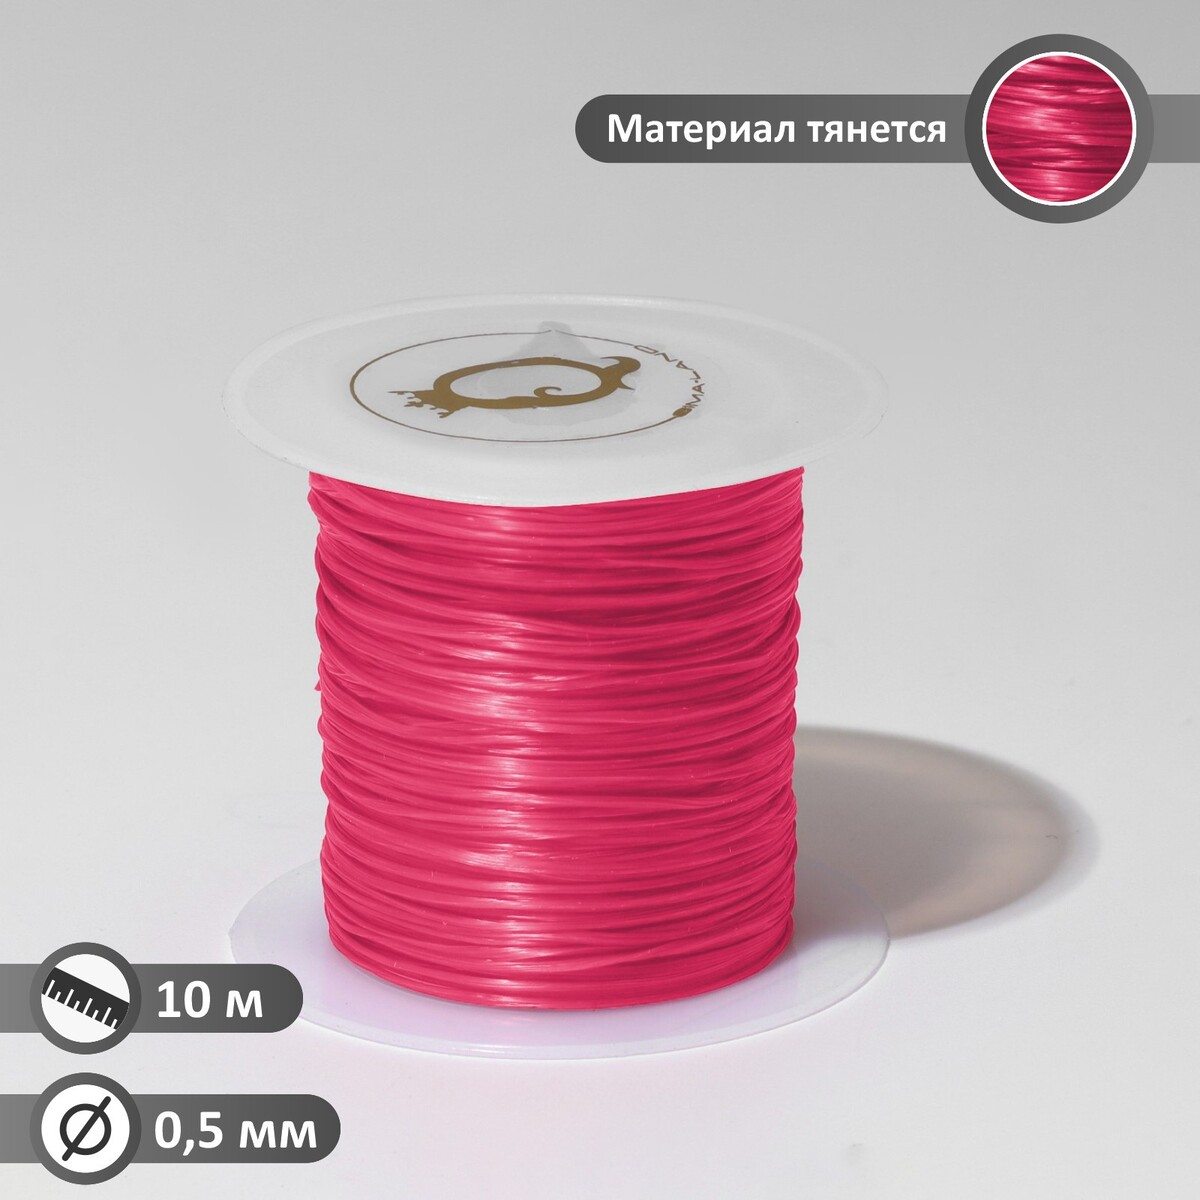 Нить силиконовая (резинка) d=0,5 мм, l=10 м (прочность 2250 денье), цвет розовый нить силиконовая резинка d 0 5мм l 10м прочность 2250 денье